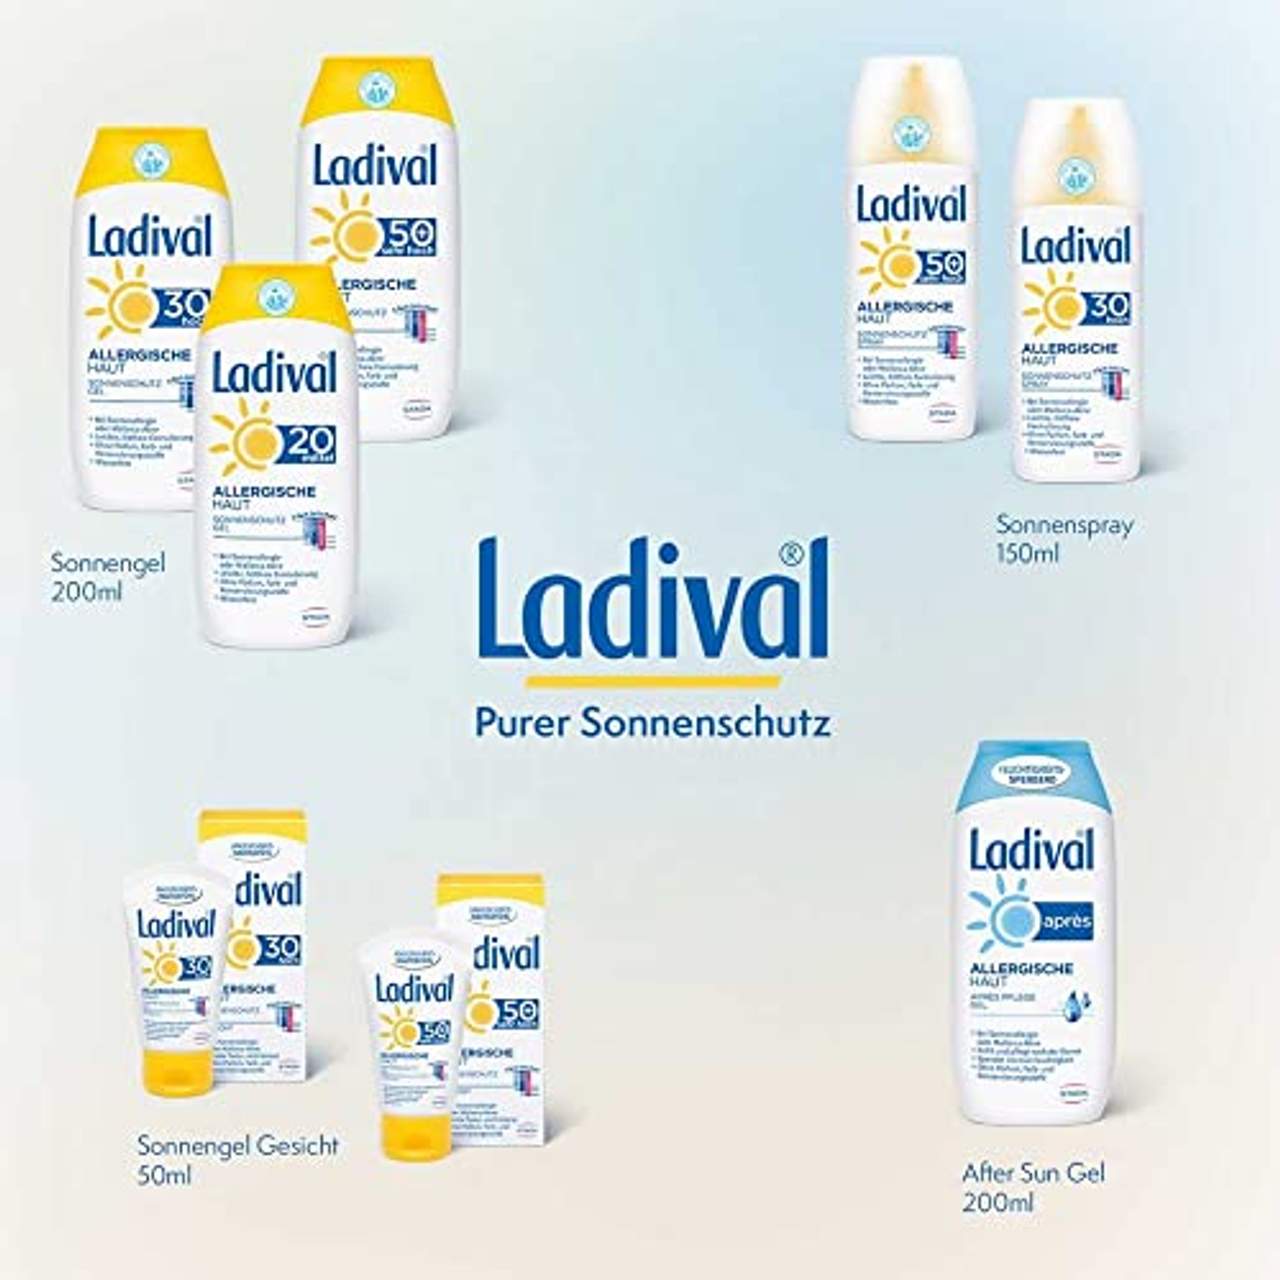 Ladival allergische Haut Gel Lsf 50+ 200 ml